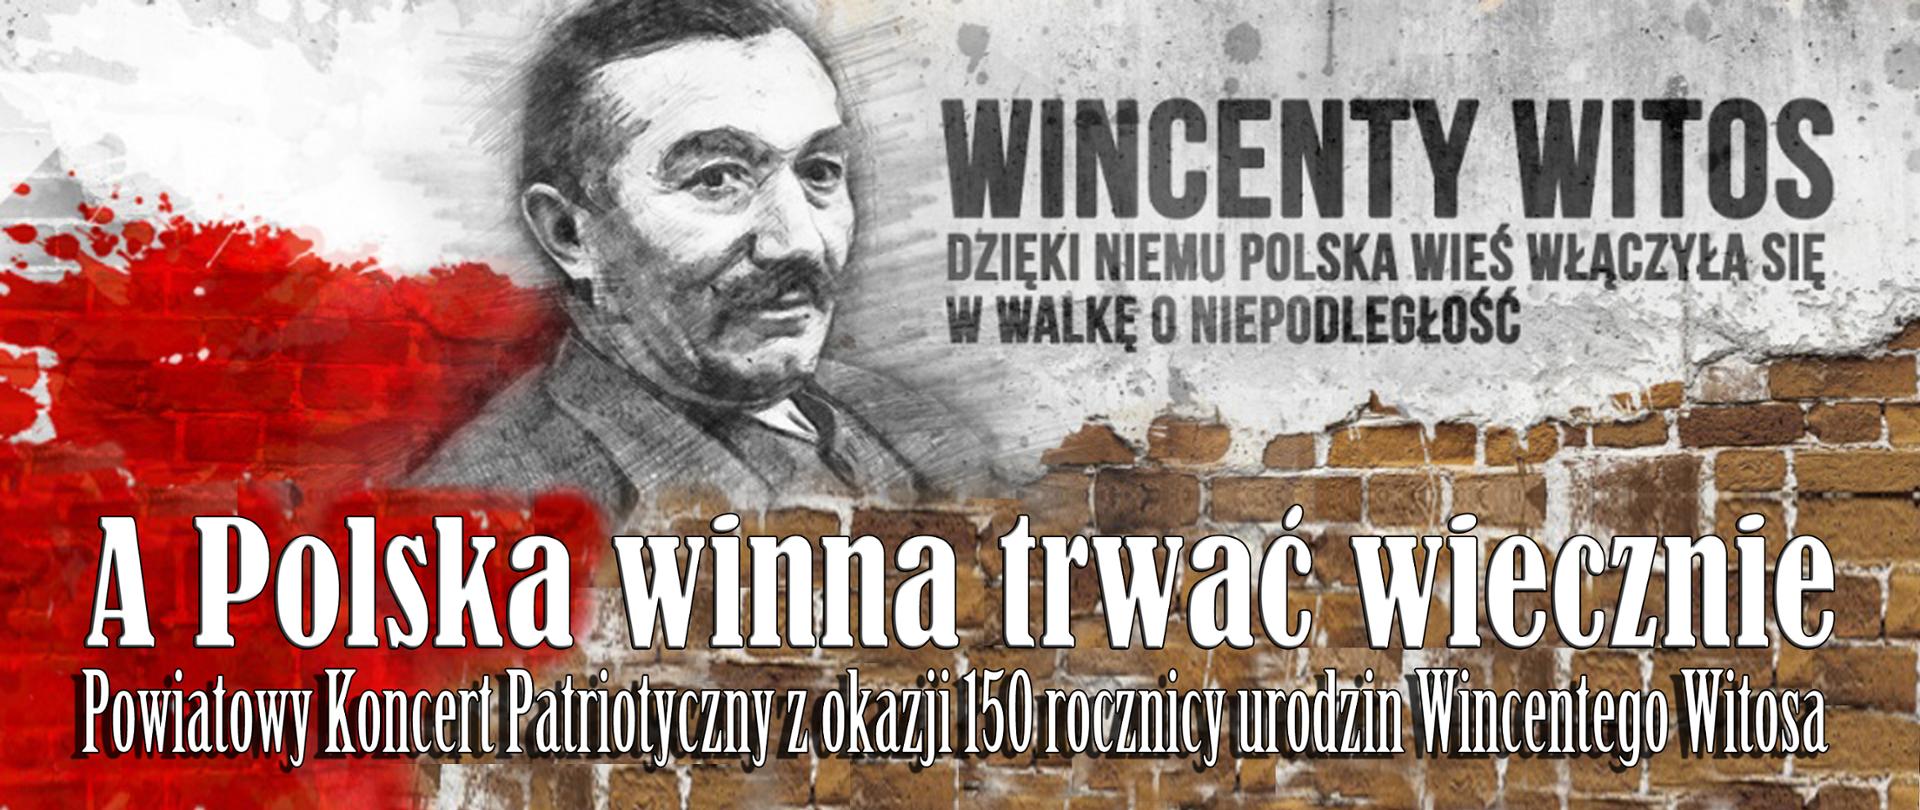 A Polska winna trwać wiecznie. Powiatowy Koncert Patriotyczny z okazji 150 rocznicy urodzin Wincentego Witosa